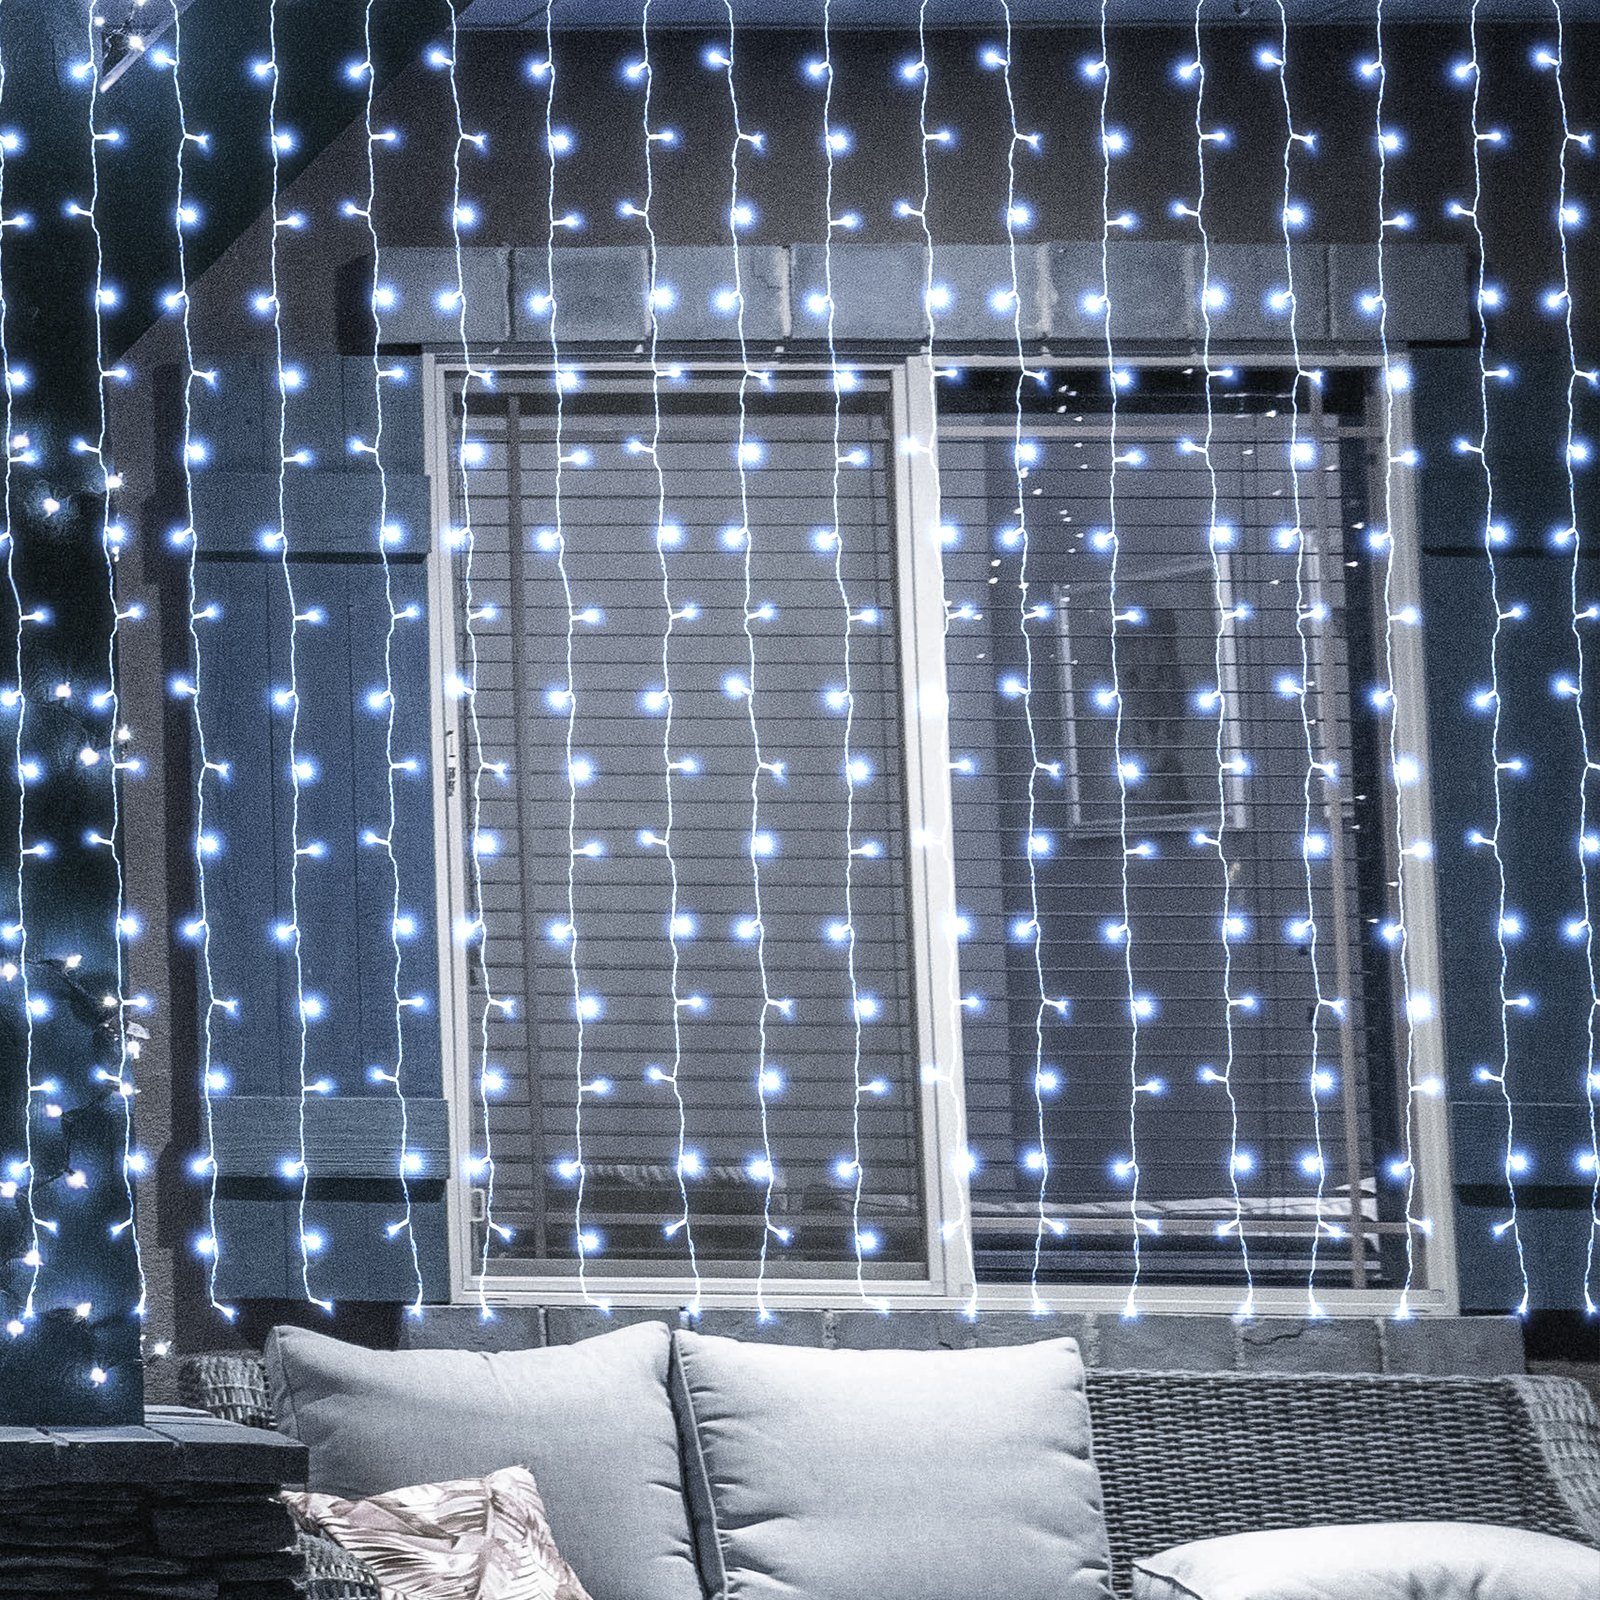 Salcar LED-Lichterkette 3m/6m LED Lichtvorhang Weihnachten Lichterkette 8 Beleuchtungsmodi Kaltweiß | Lichterketten